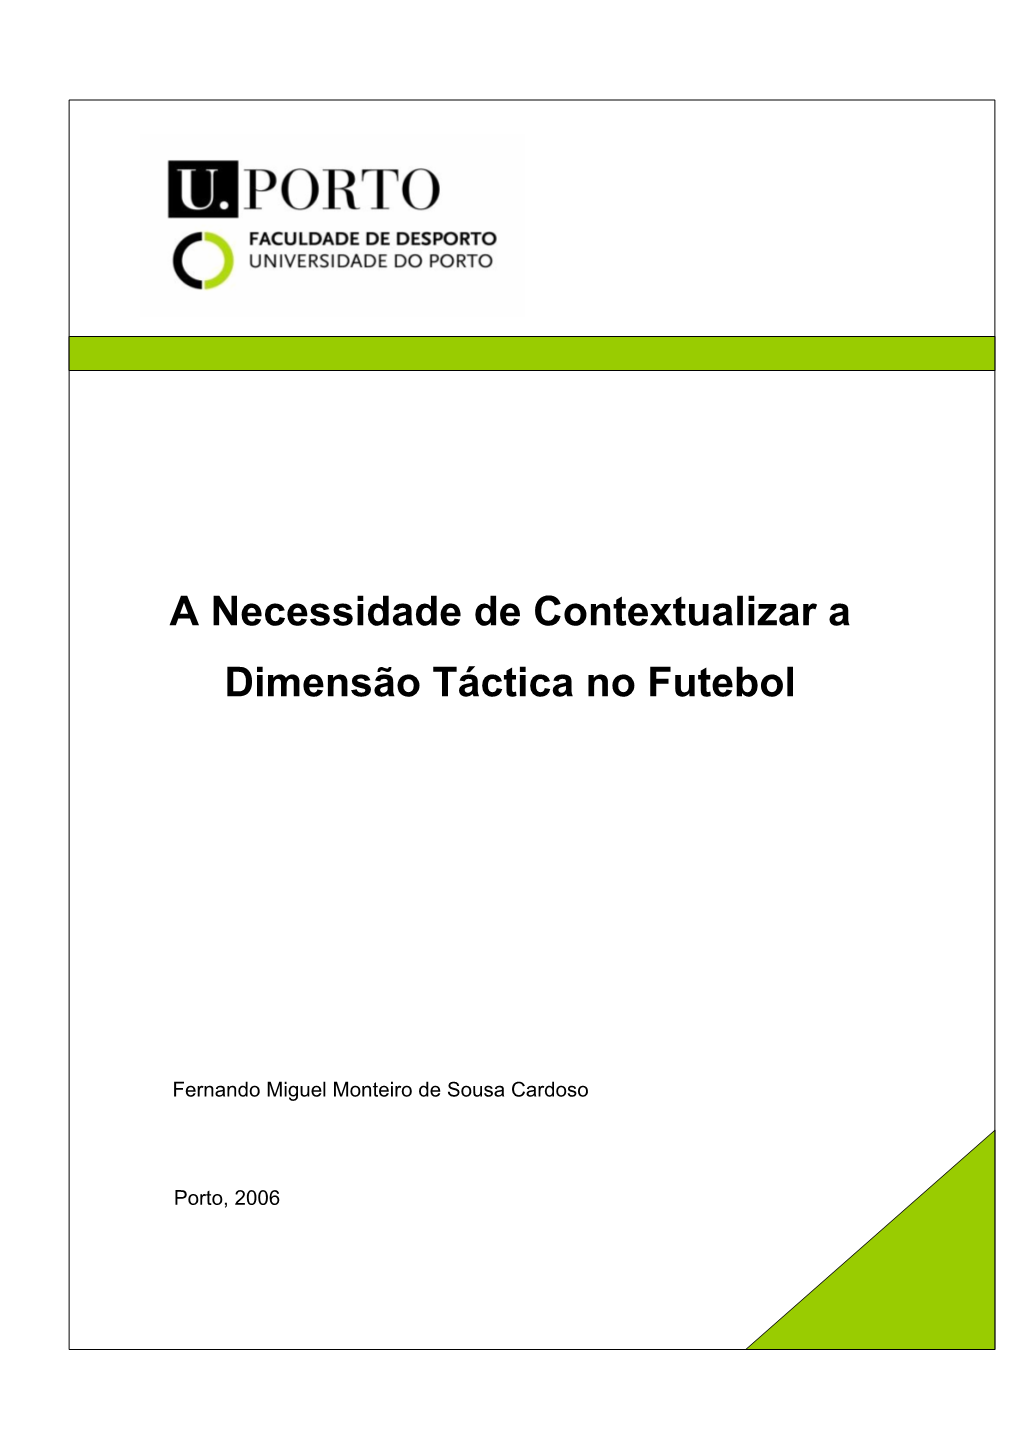 A Necessidade De Contextualizar a Dimensão Táctica No Futebol